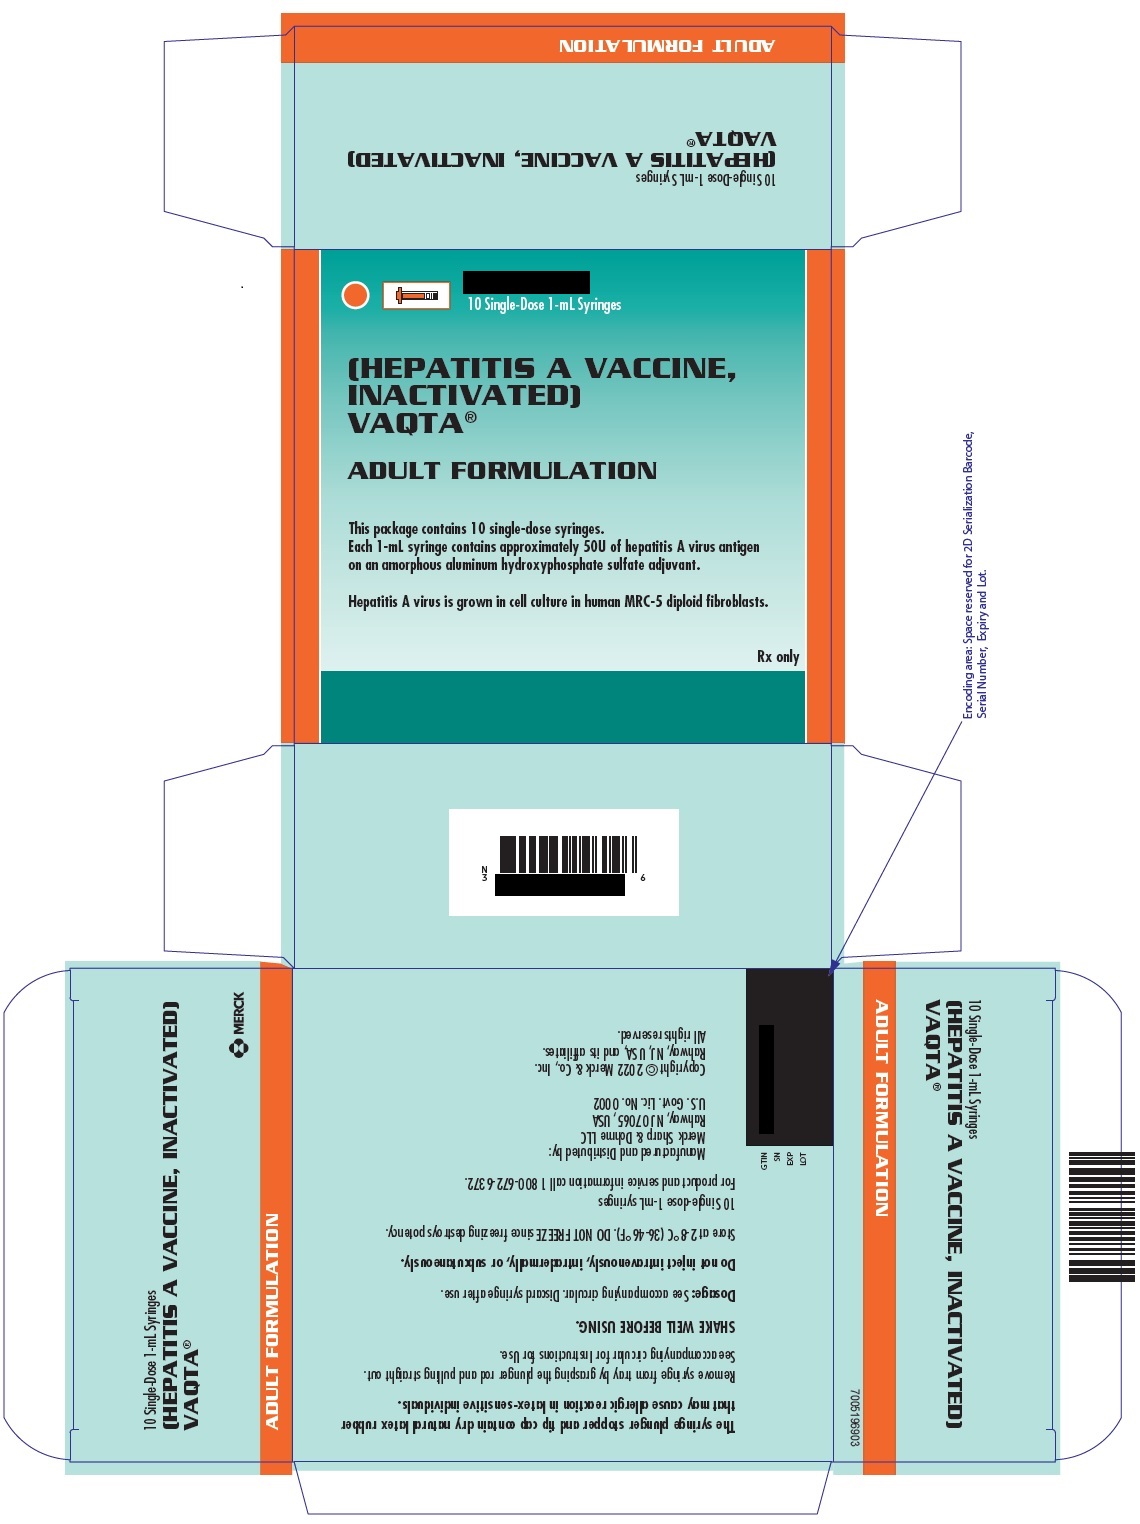 PRINCIPAL DISPLAY PANEL - 1 mL Syringe Carton